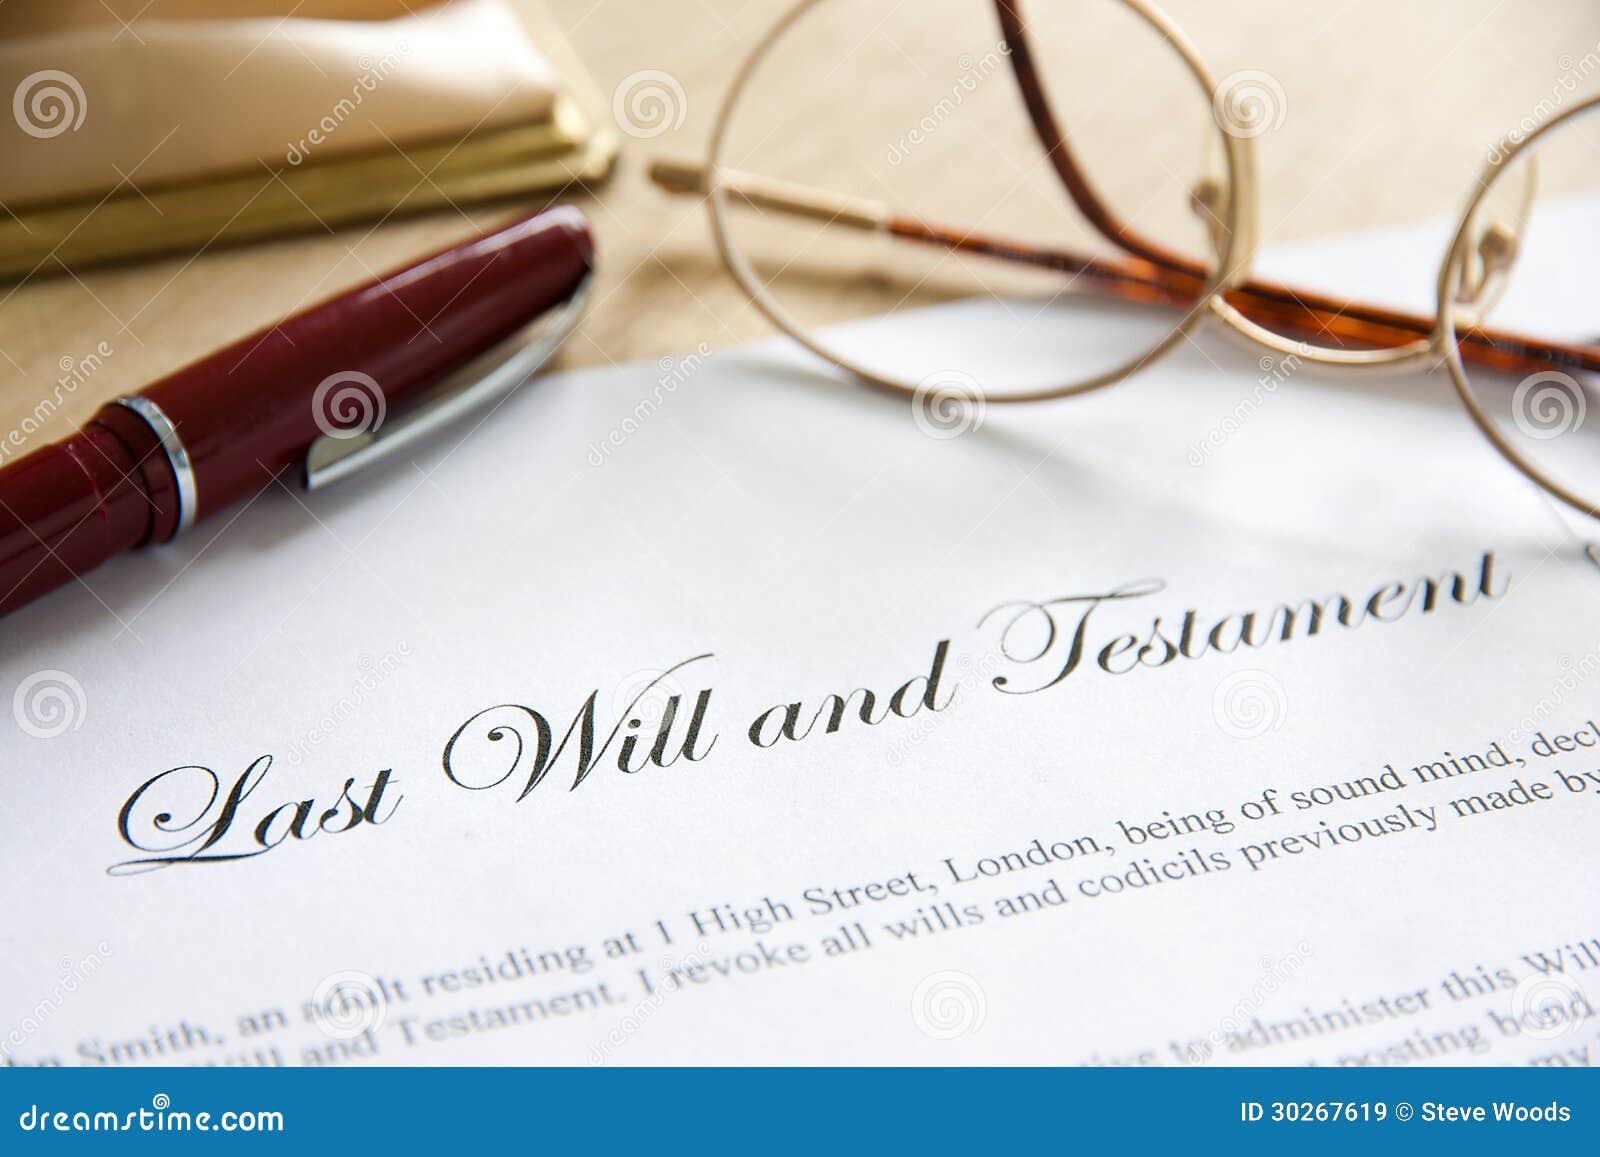 last will & testament